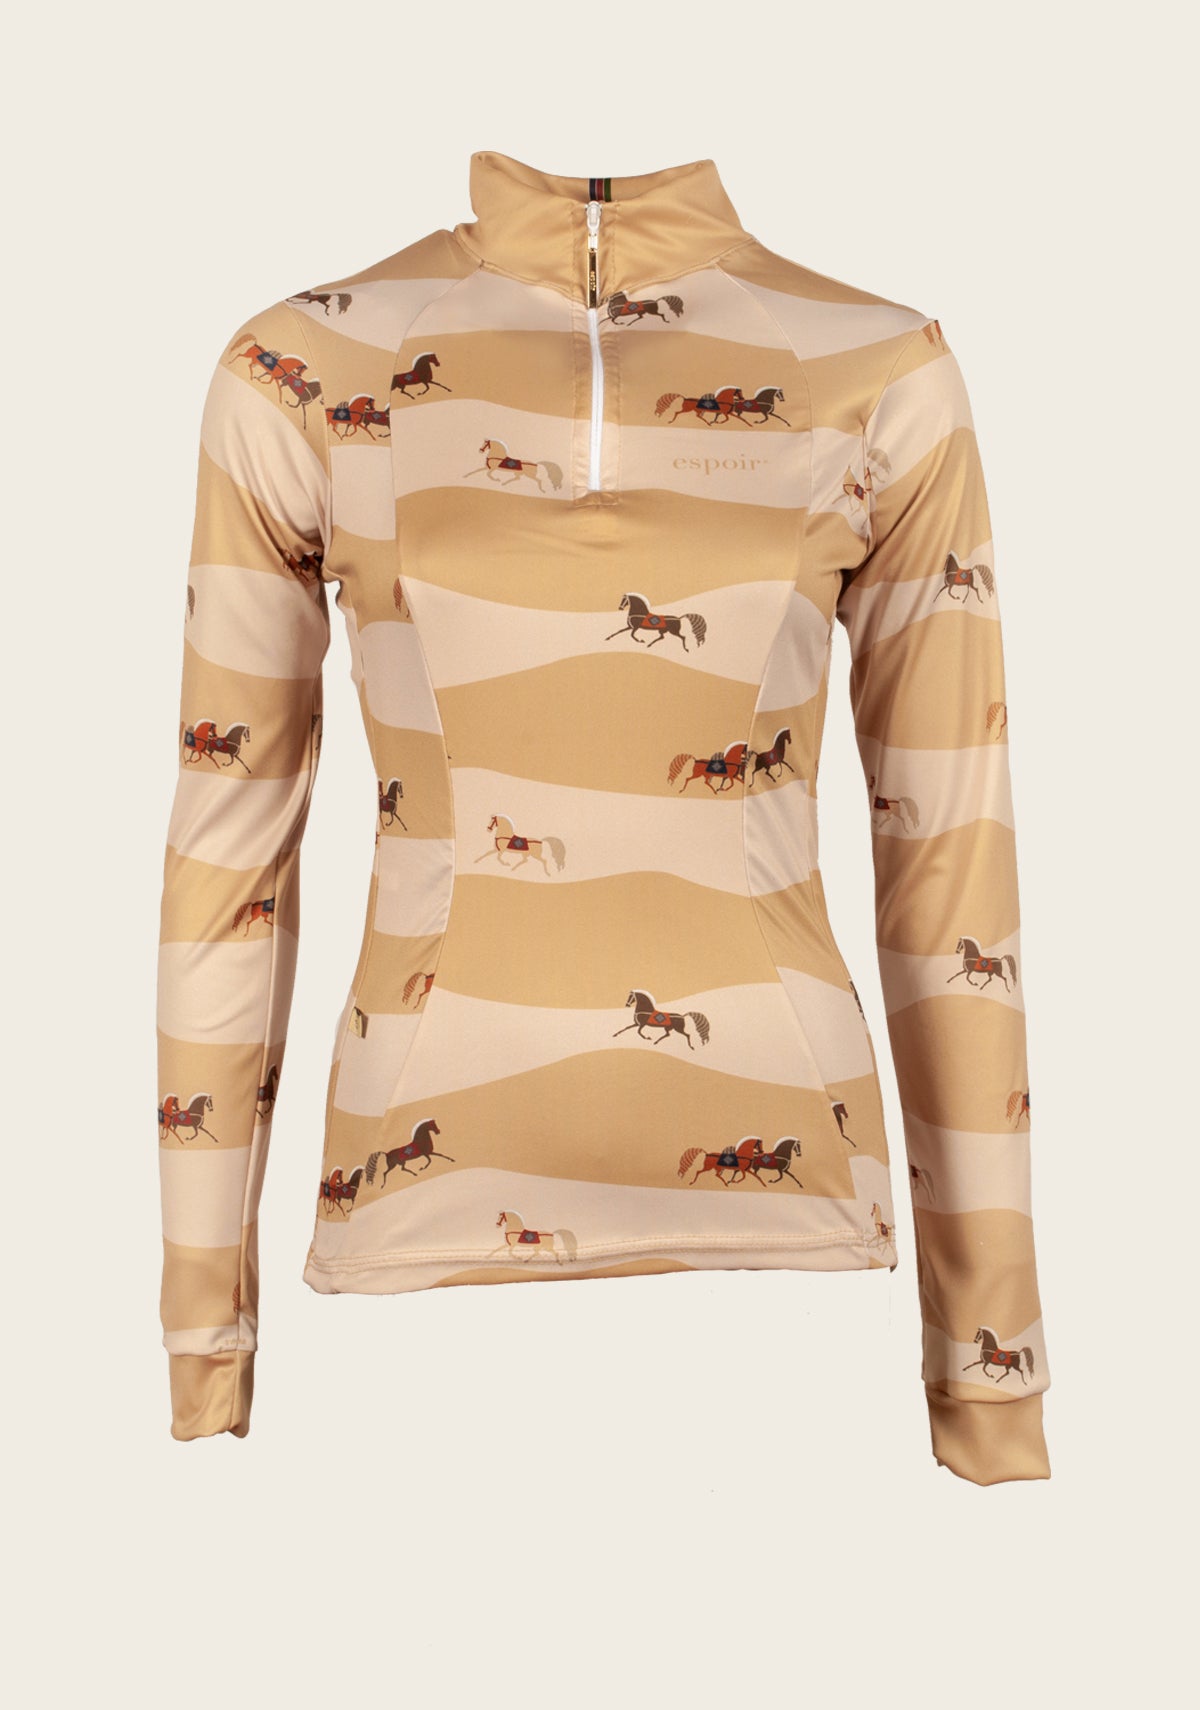 Quarter Zip Sun Shirt from Espoir Equestrian - Special Offer